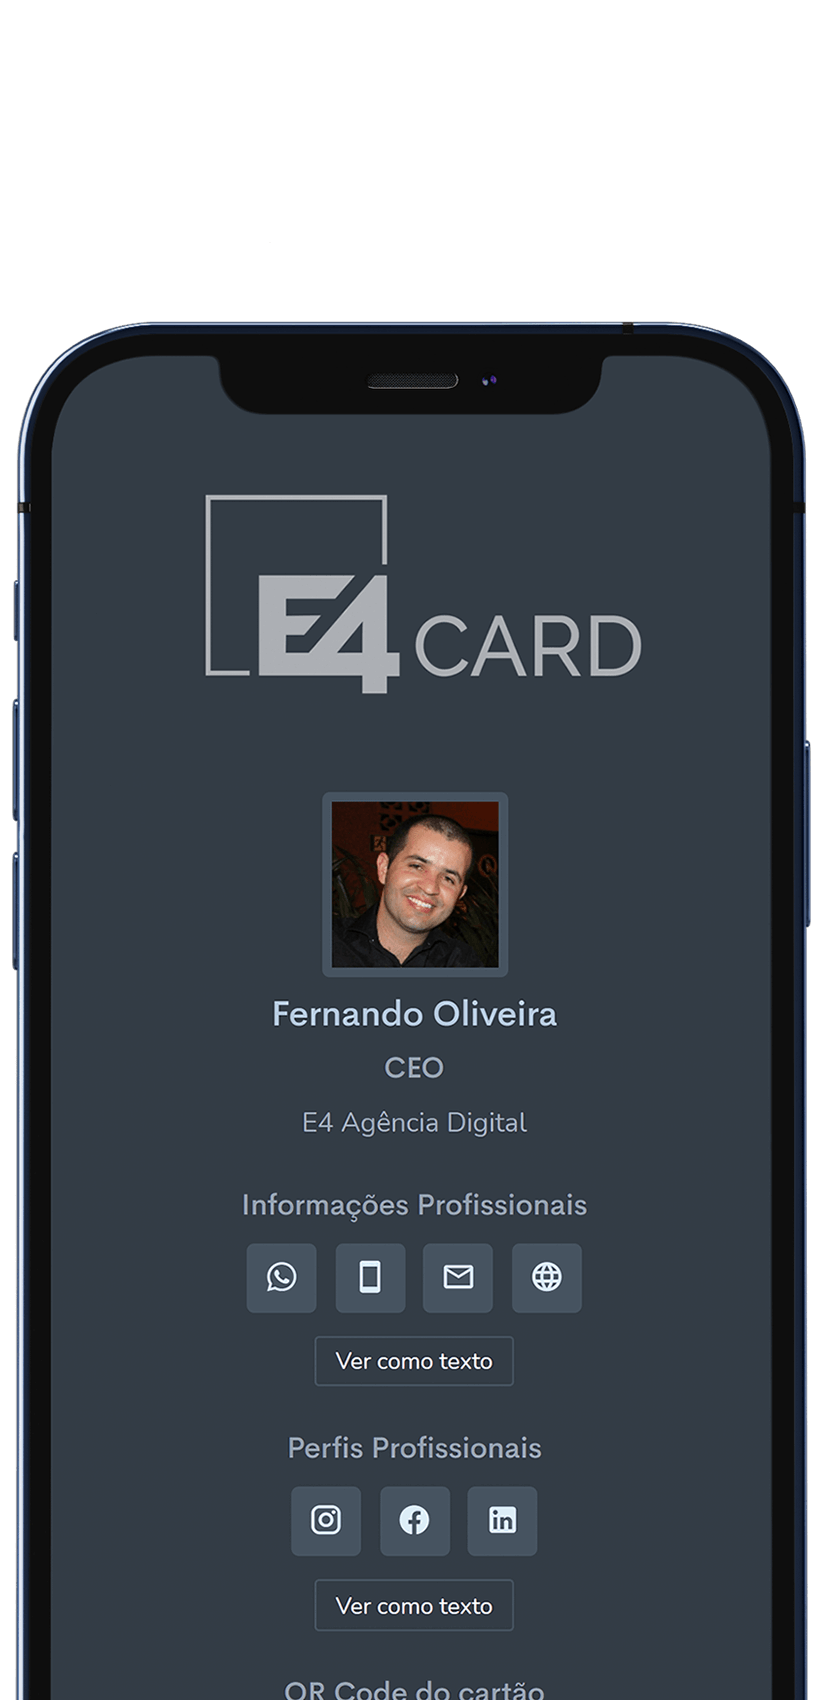 Exemplo do E4Card no celular